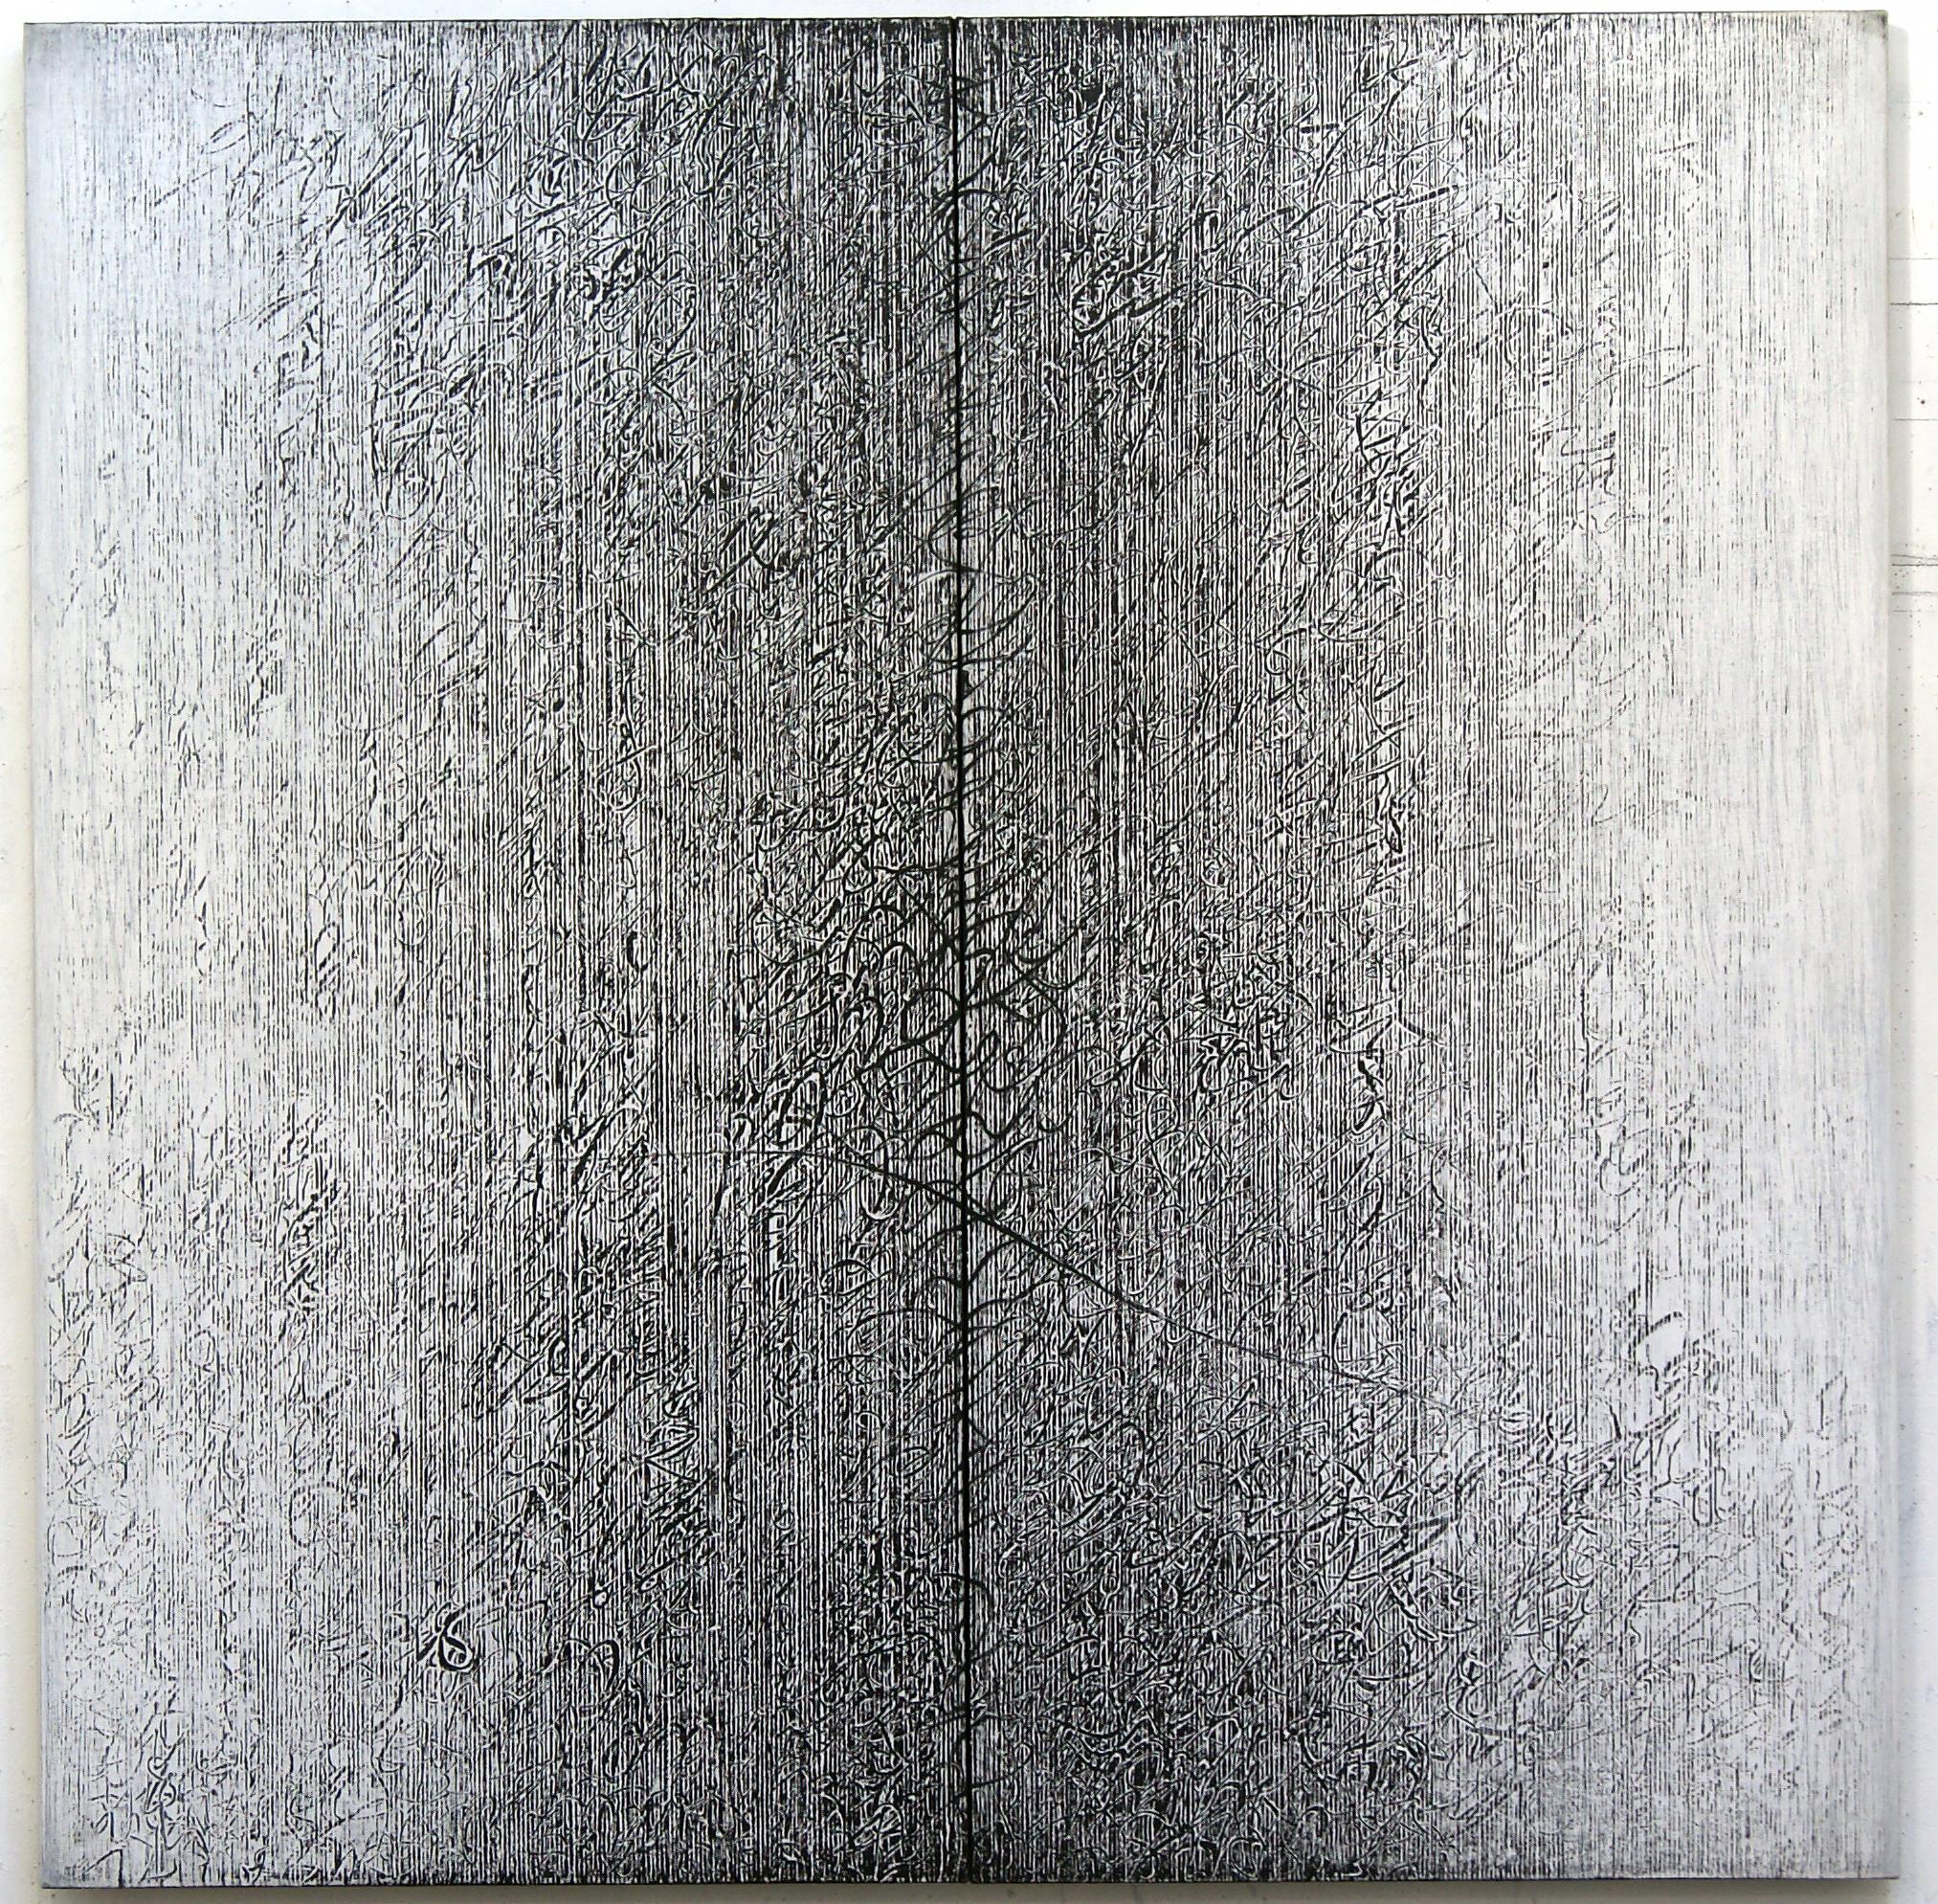 Abstract Painting Bill Maggio - Grande texture géométrique contemporaine noire et blanche